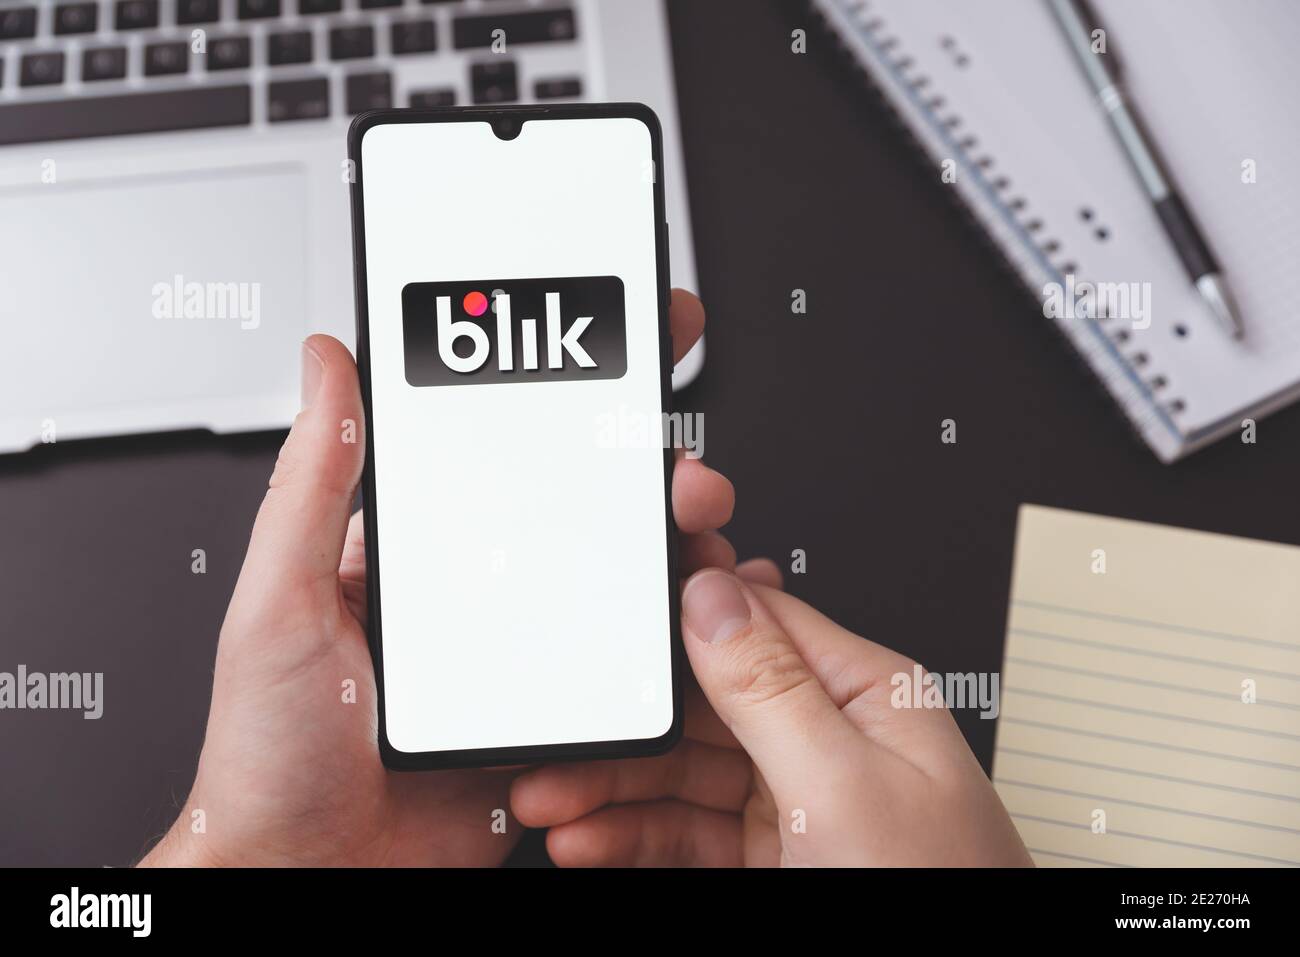 Wroclaw, Pologne - DEC 2, 2020 : logo Blik sur smartphone. Blik est le système Internet de paiement polonais le plus populaire Banque D'Images